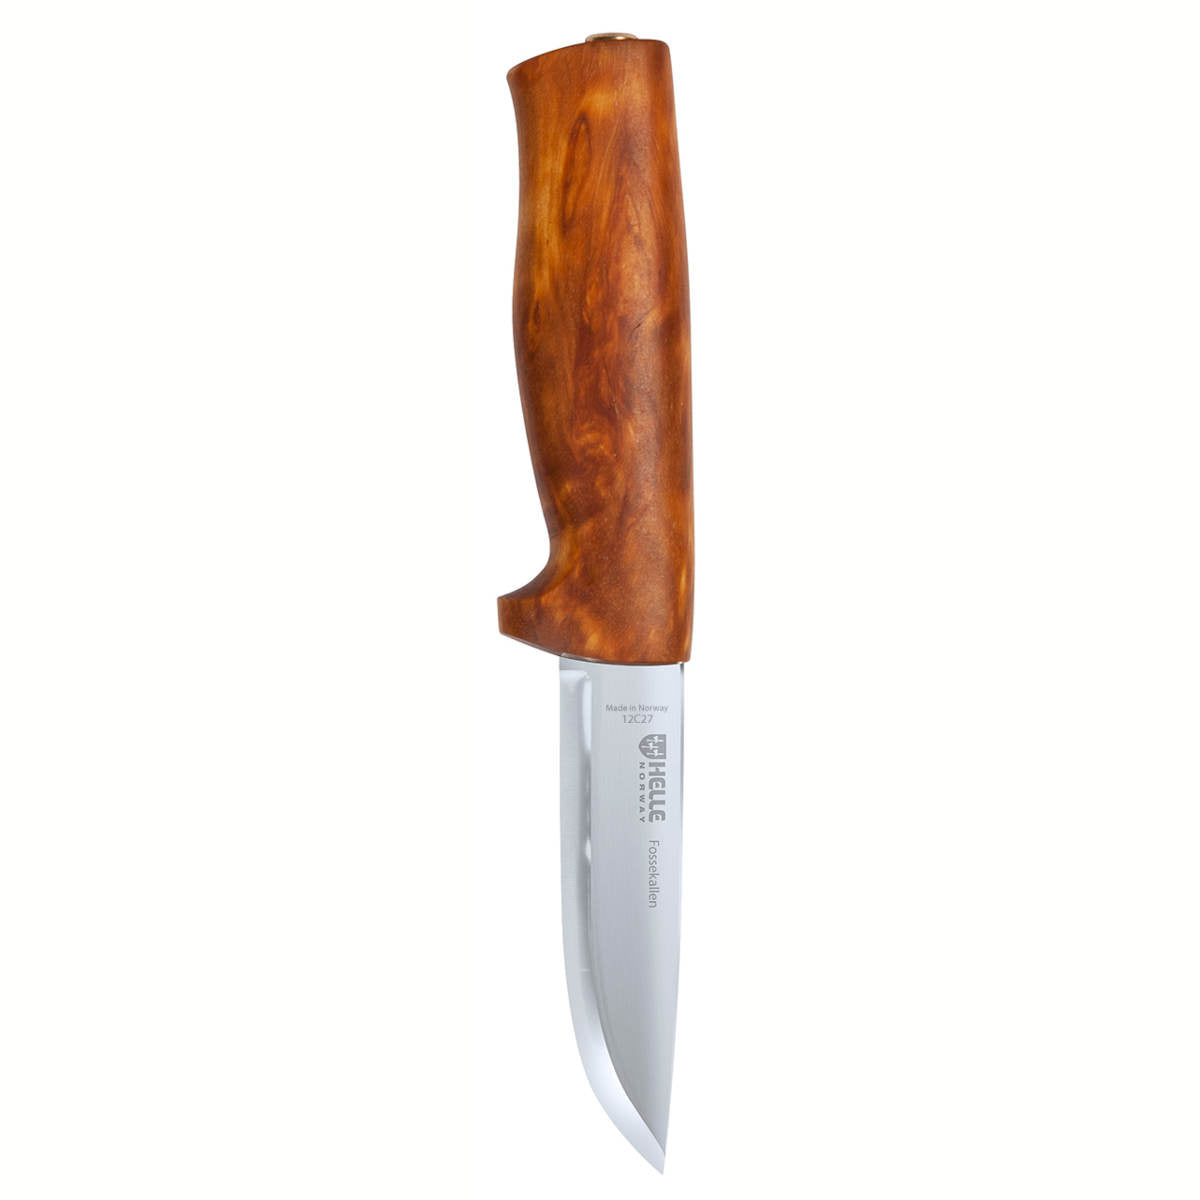 Helle Eggen Knife 75 — Canadian Preparedness